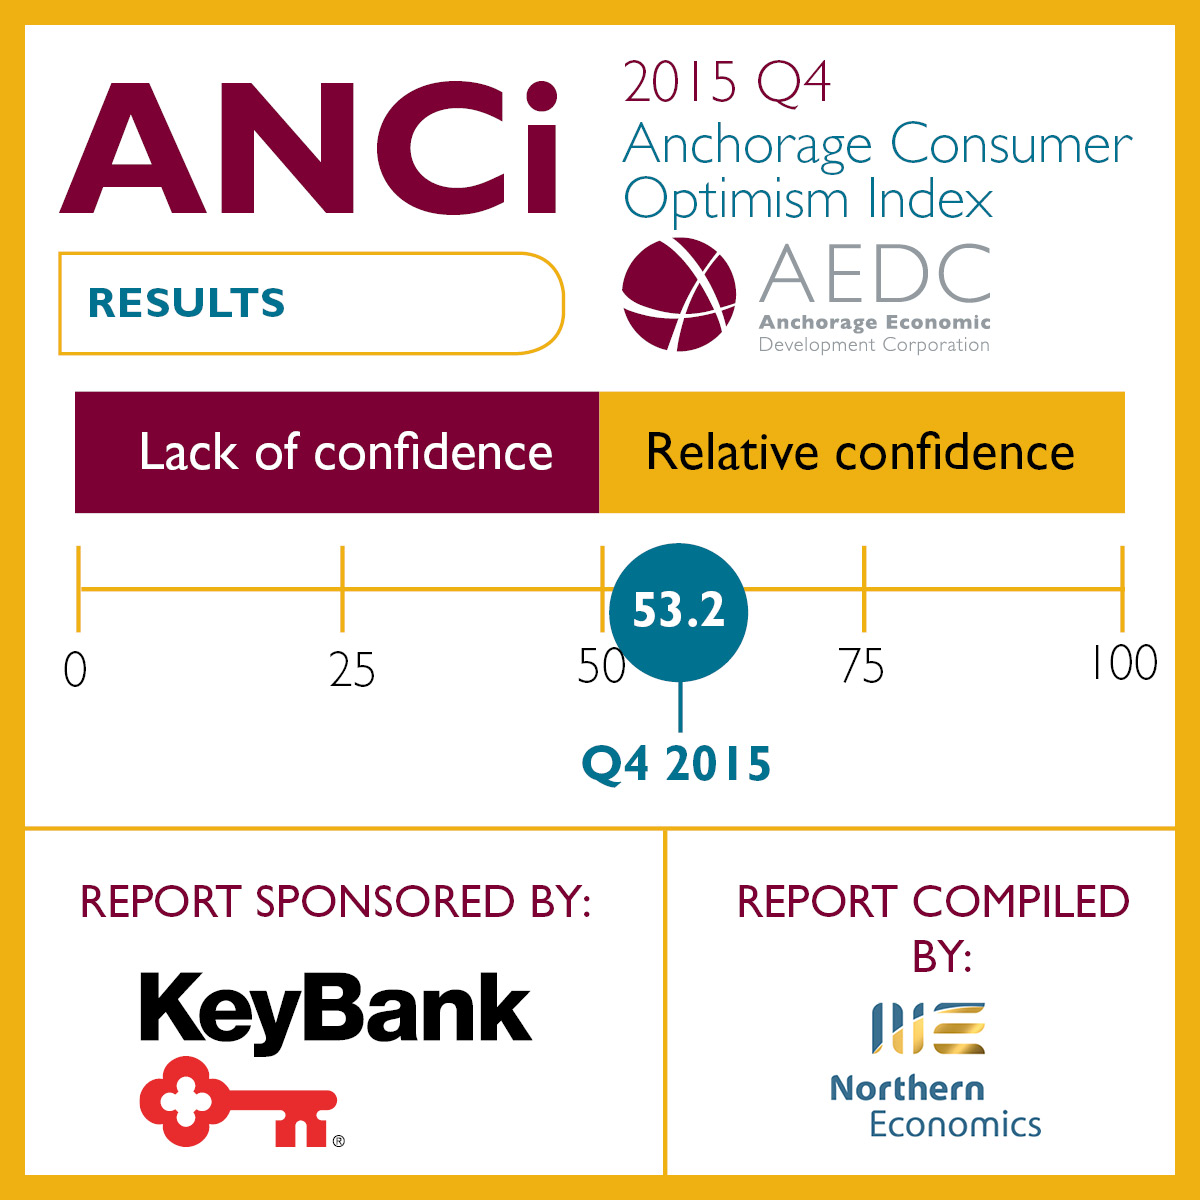 Anchorage Consumer Optimism Index: 2015 Q4